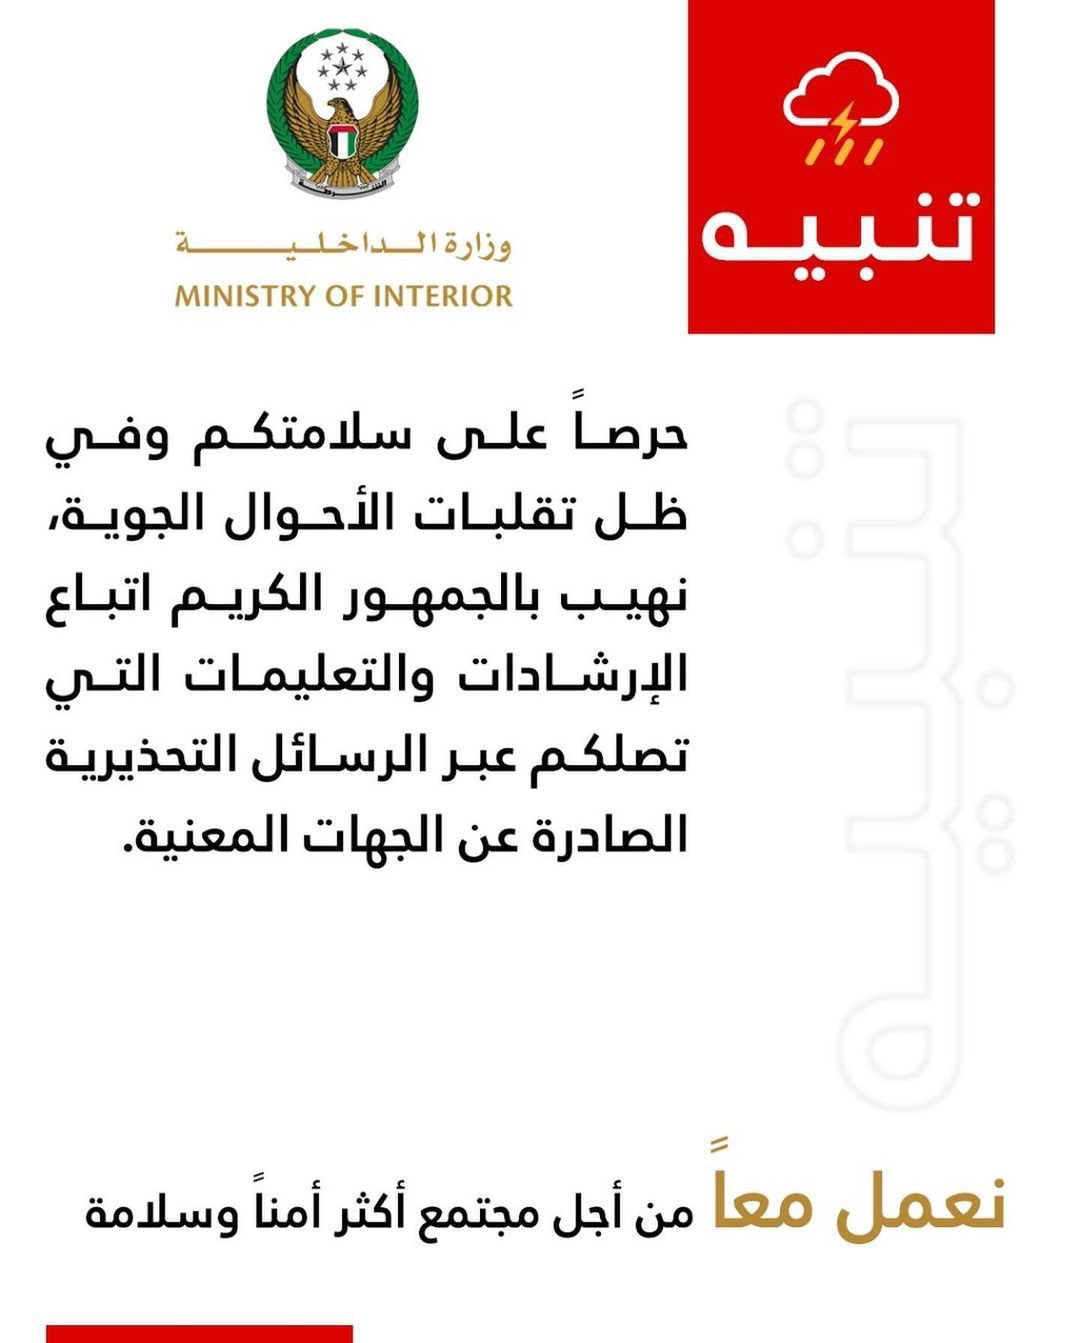 الداخلية الإماراتية توجه رسائل تحذيرية للمواطنين في فبراير الفائت بسبب المنخفض الجوي